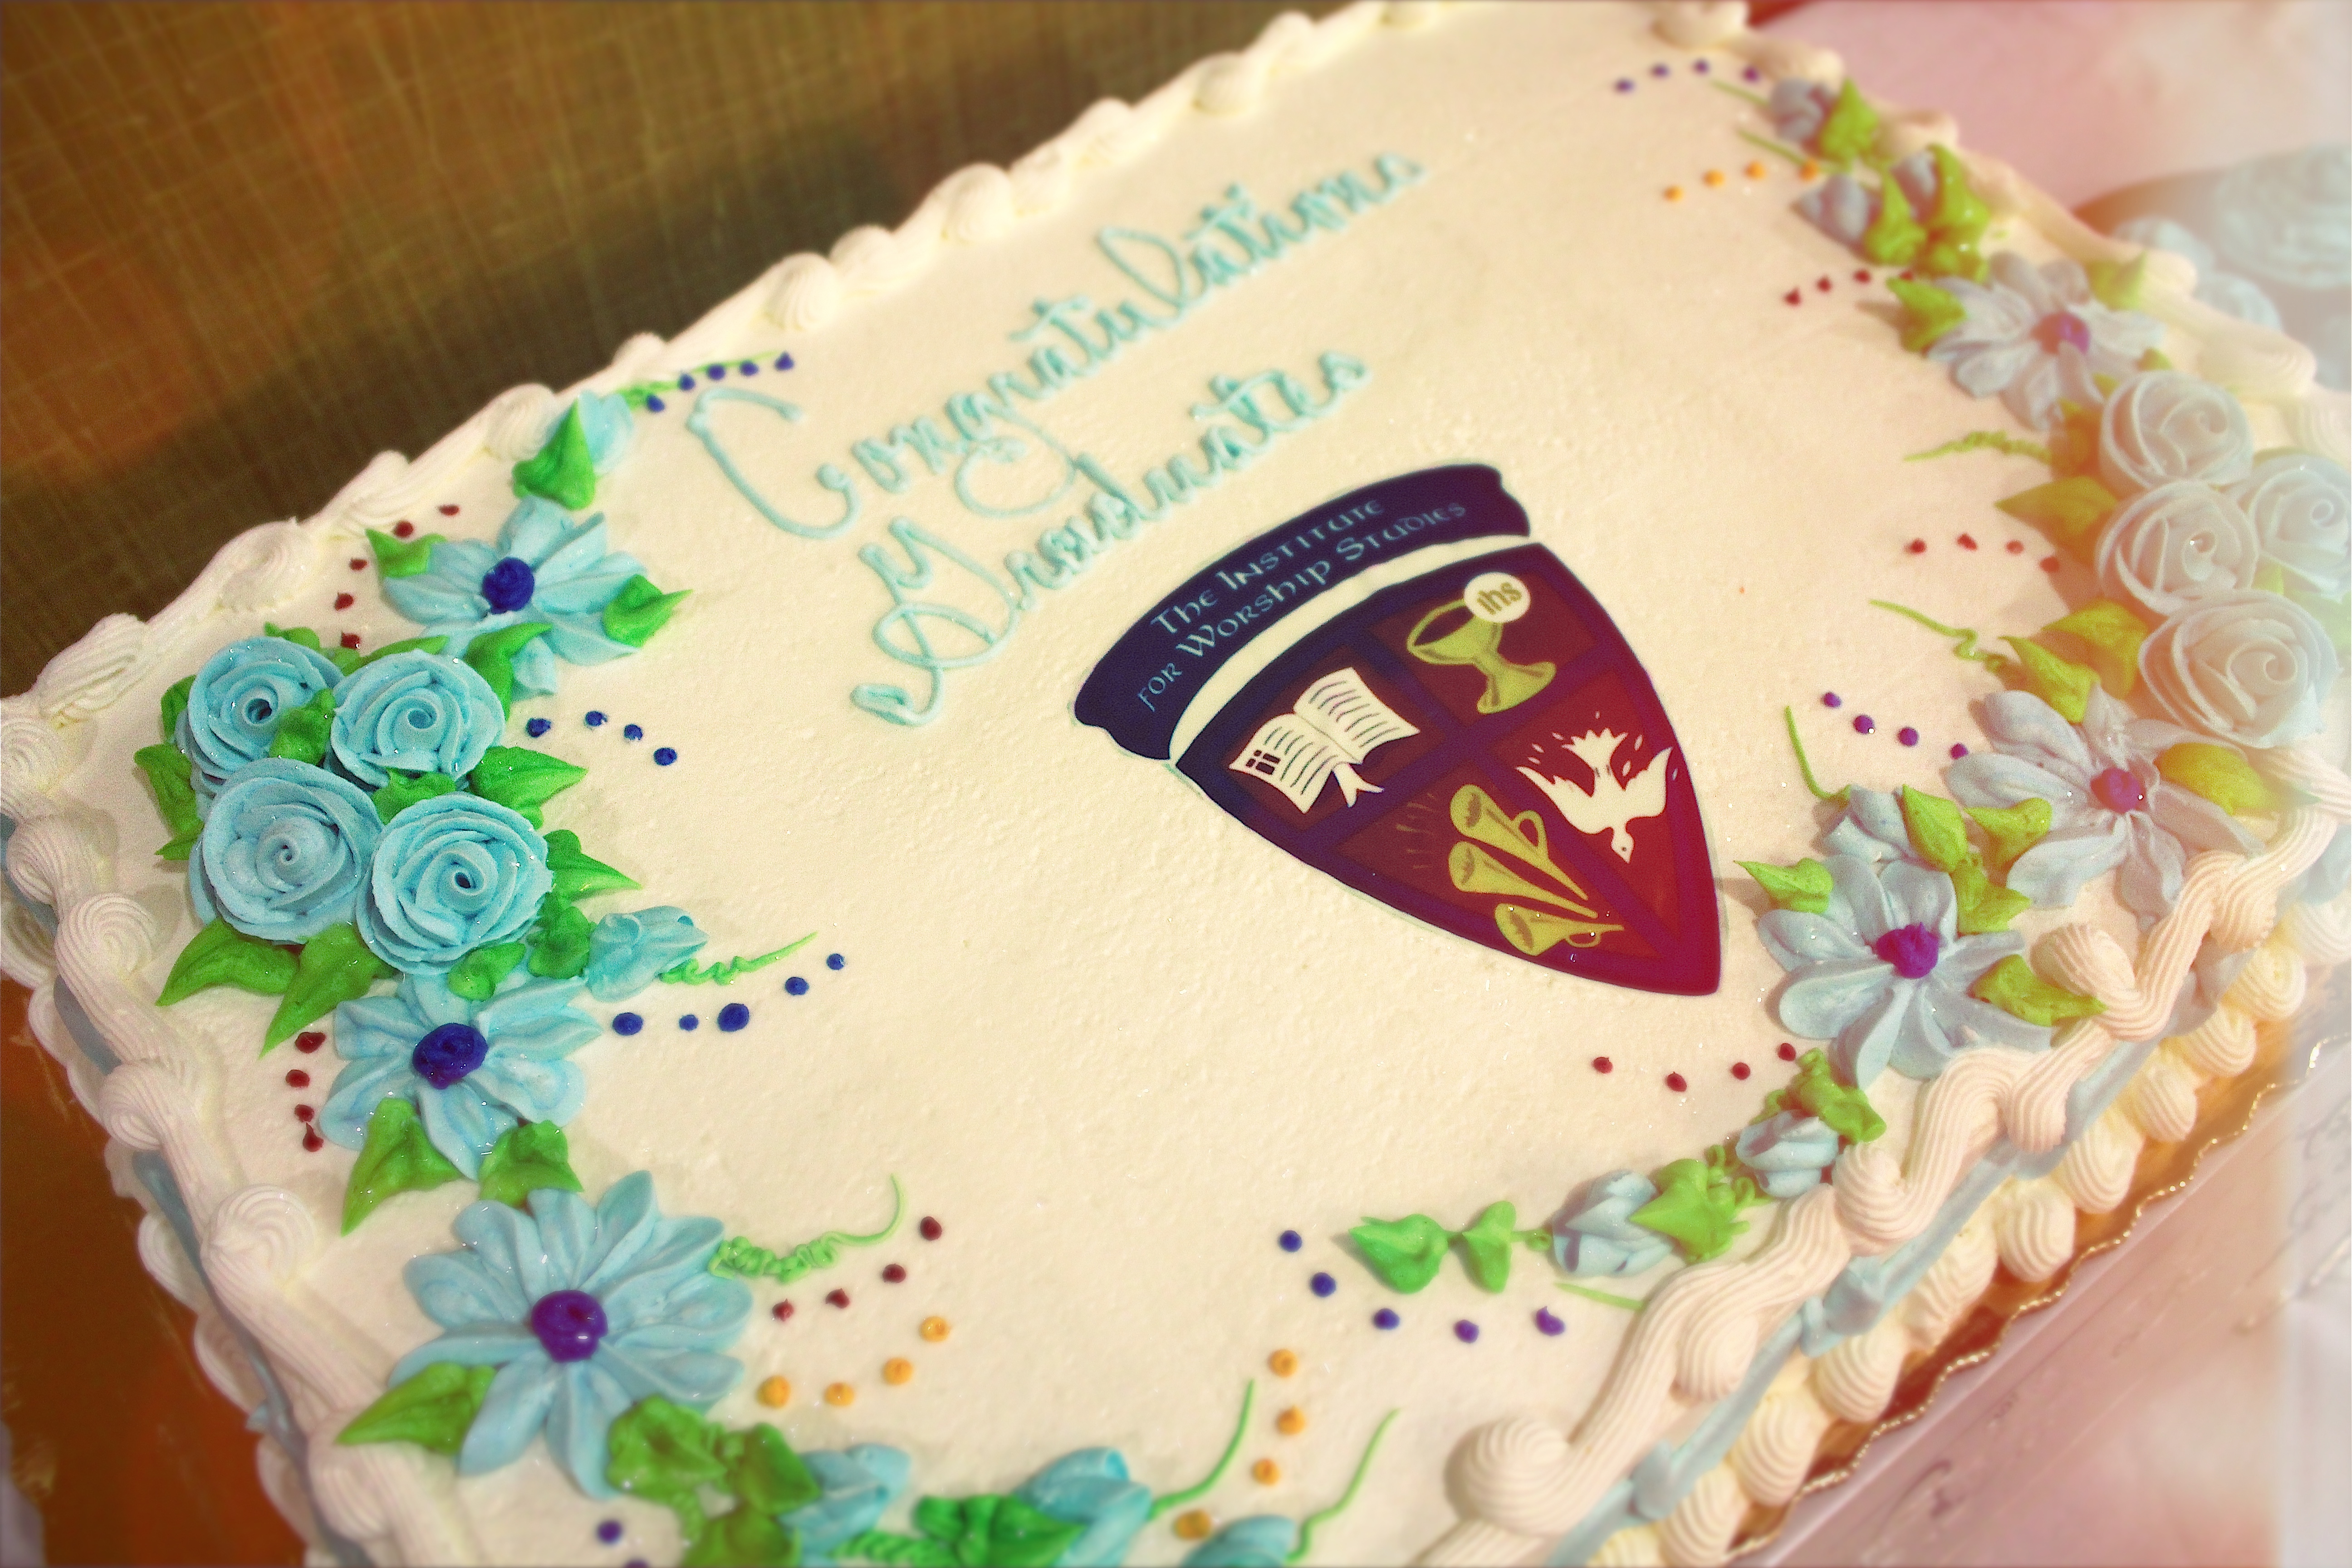 Cake celebrating 2015 graduates